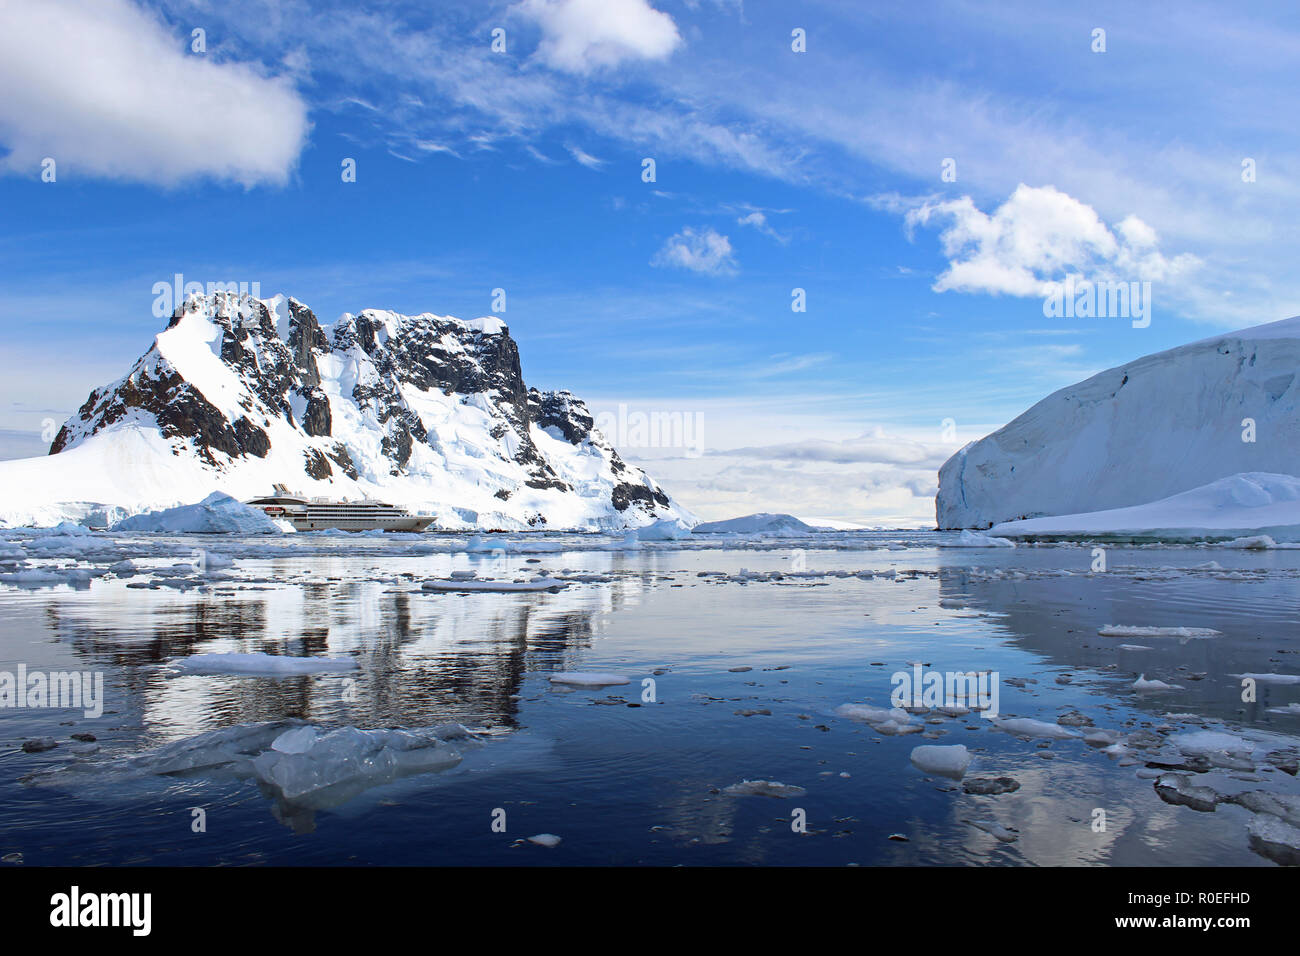 Un navire de croisière expédition en Antarctique à l'ancre au milieu de l'eau glacée scintillants, reflet de Paradise Bay dans la péninsule antarctique le long d'une journée d'été Banque D'Images